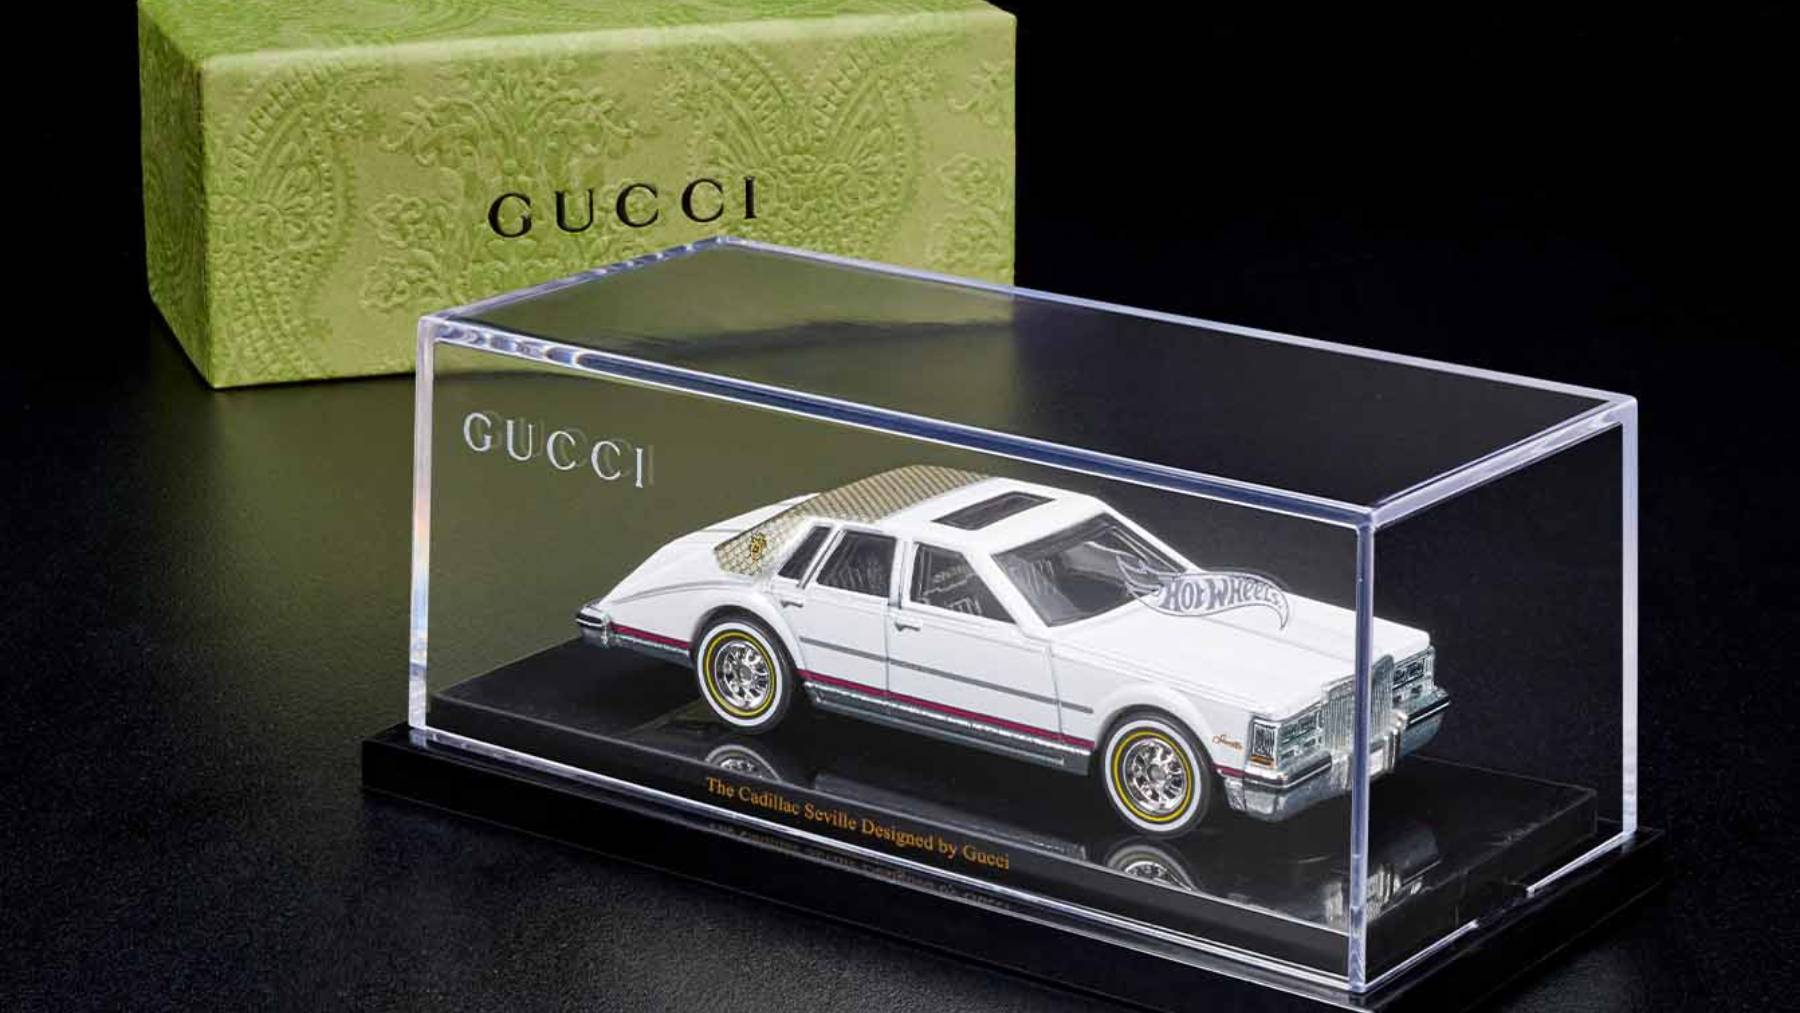 古驰(Gucci)与HotWheels合作推出了一款售价120美元的玩具车，上面印有该品牌的标志性标志。礼貌